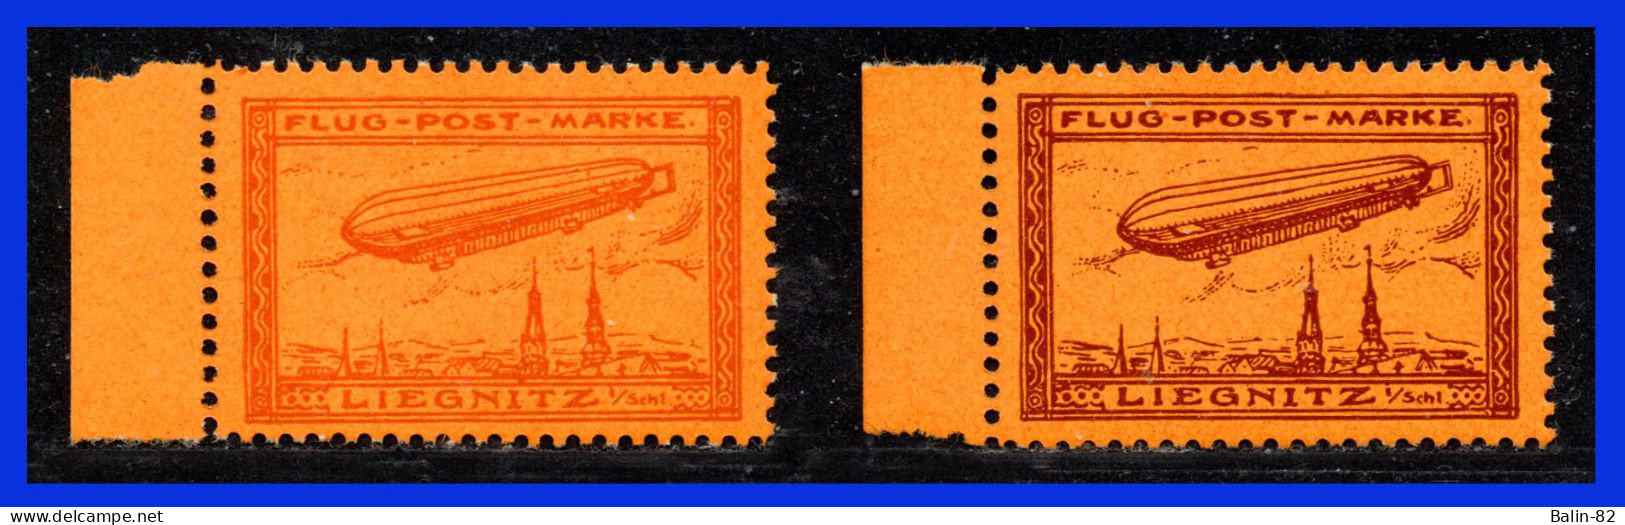 1913 - Alemania - Liegnitz - Scott Nº 8a - 8b - MNH -  AL- 15 - 03 - Unused Stamps